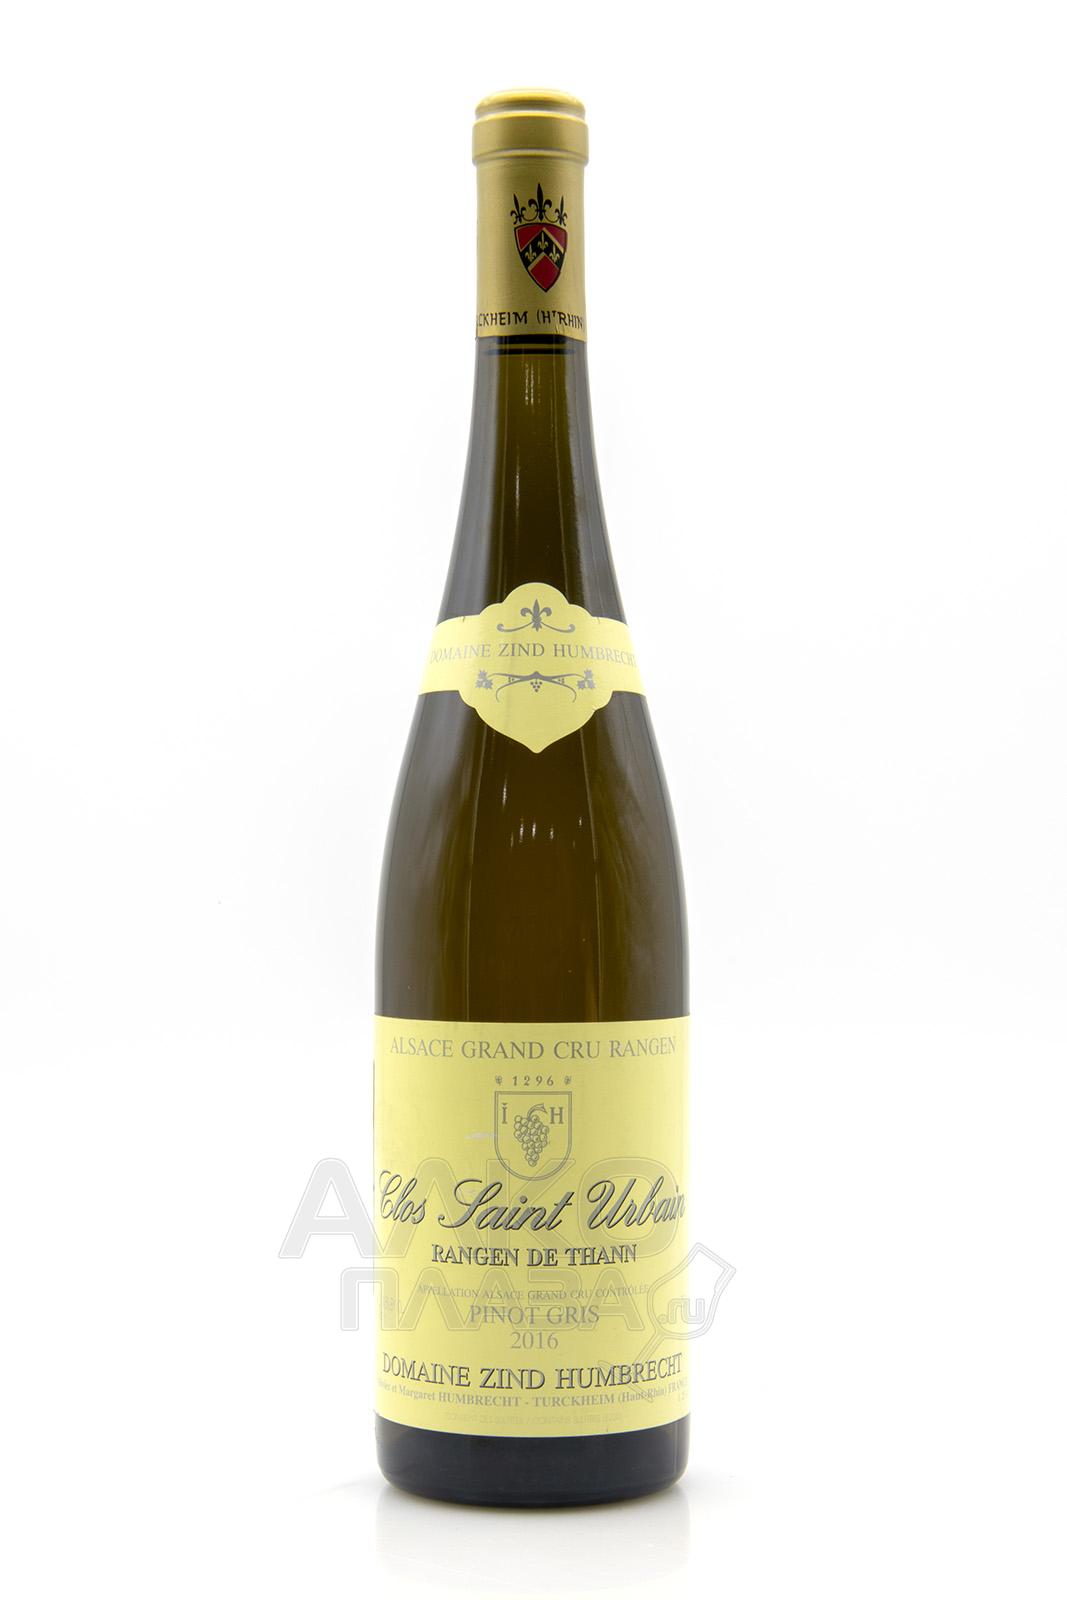 Zind-Humbrecht Pinot Gris Rangen de Thann Clos Saint Urbain Alsace AOC - вино Зинд-Умбрехт Пино Гри Ранген де Танн Кло Сент Урбен 0.75 л